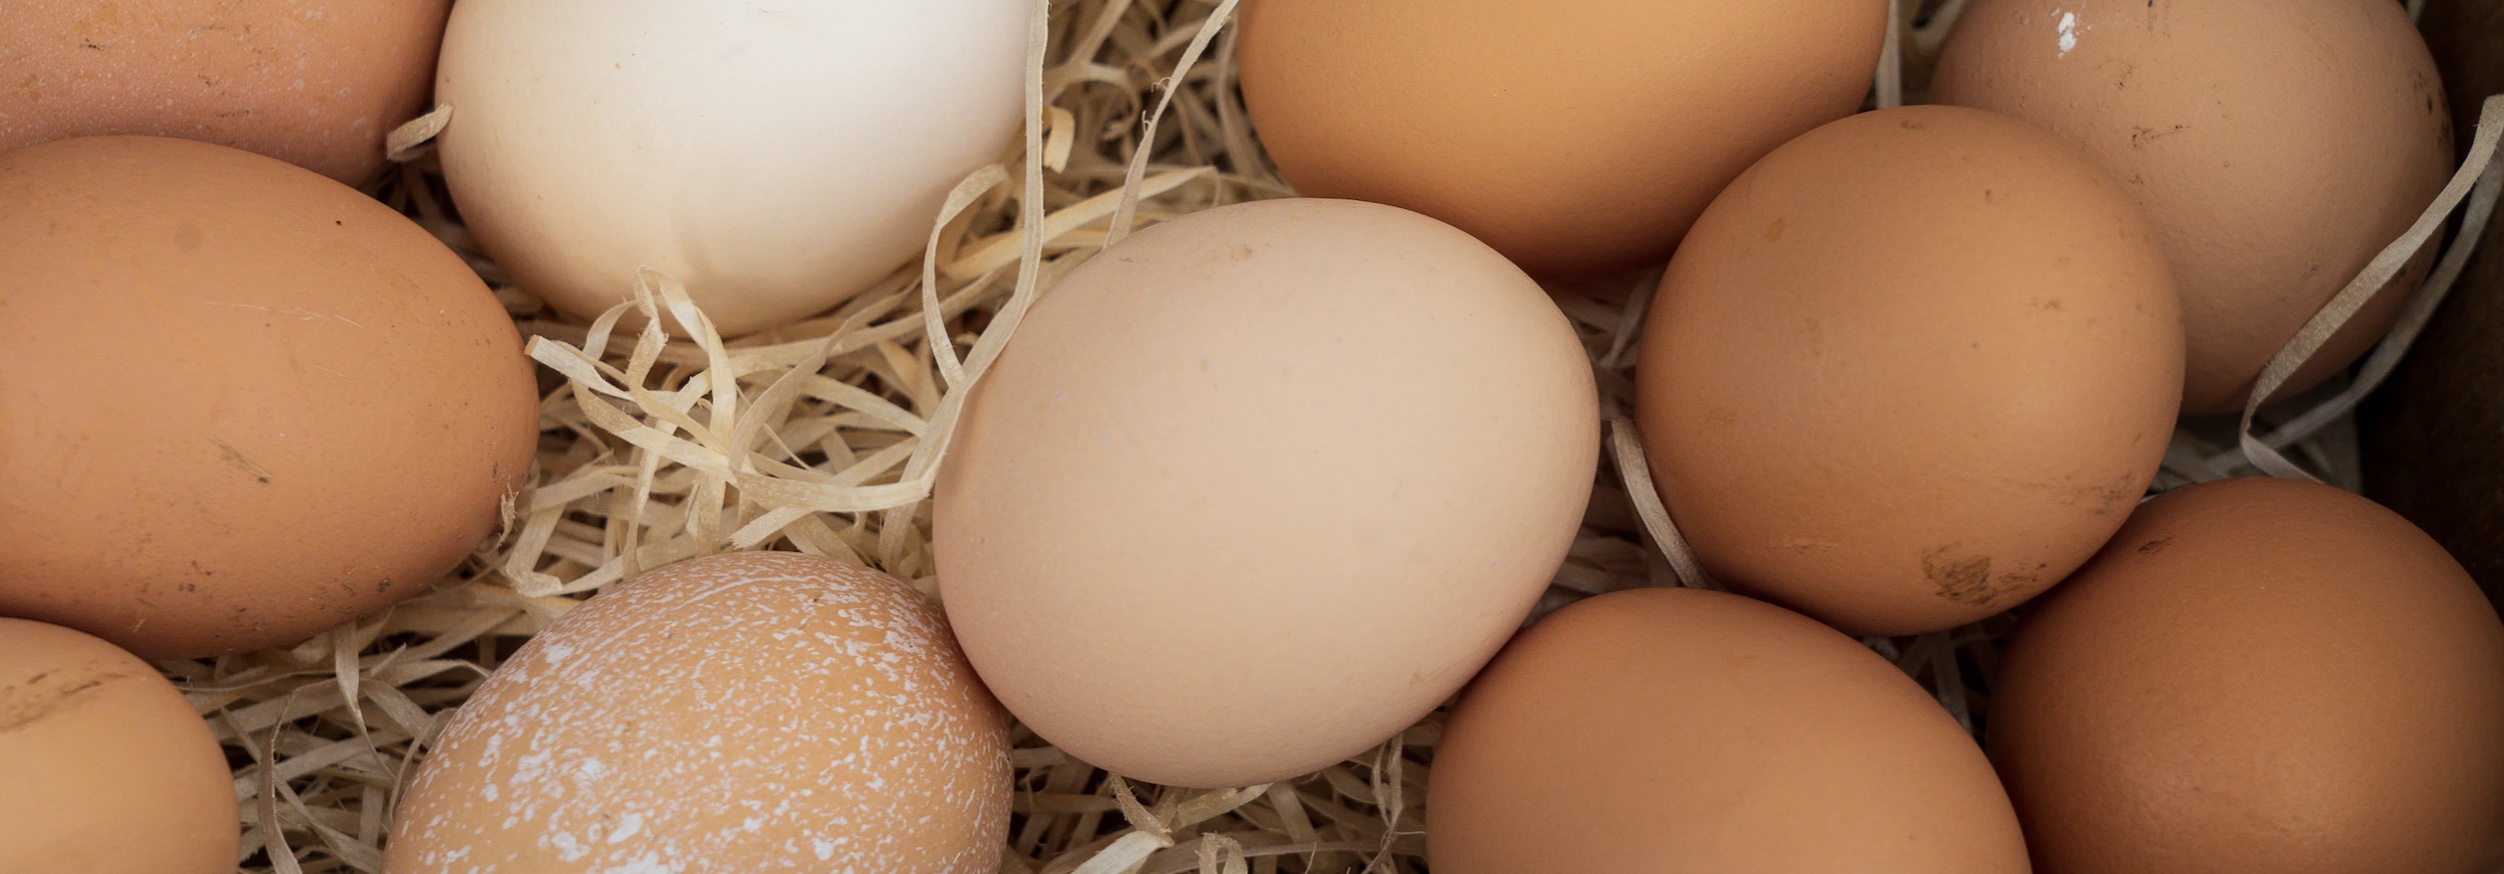 Рост цен на яйца заставил антимонопольную службу завести первые дела